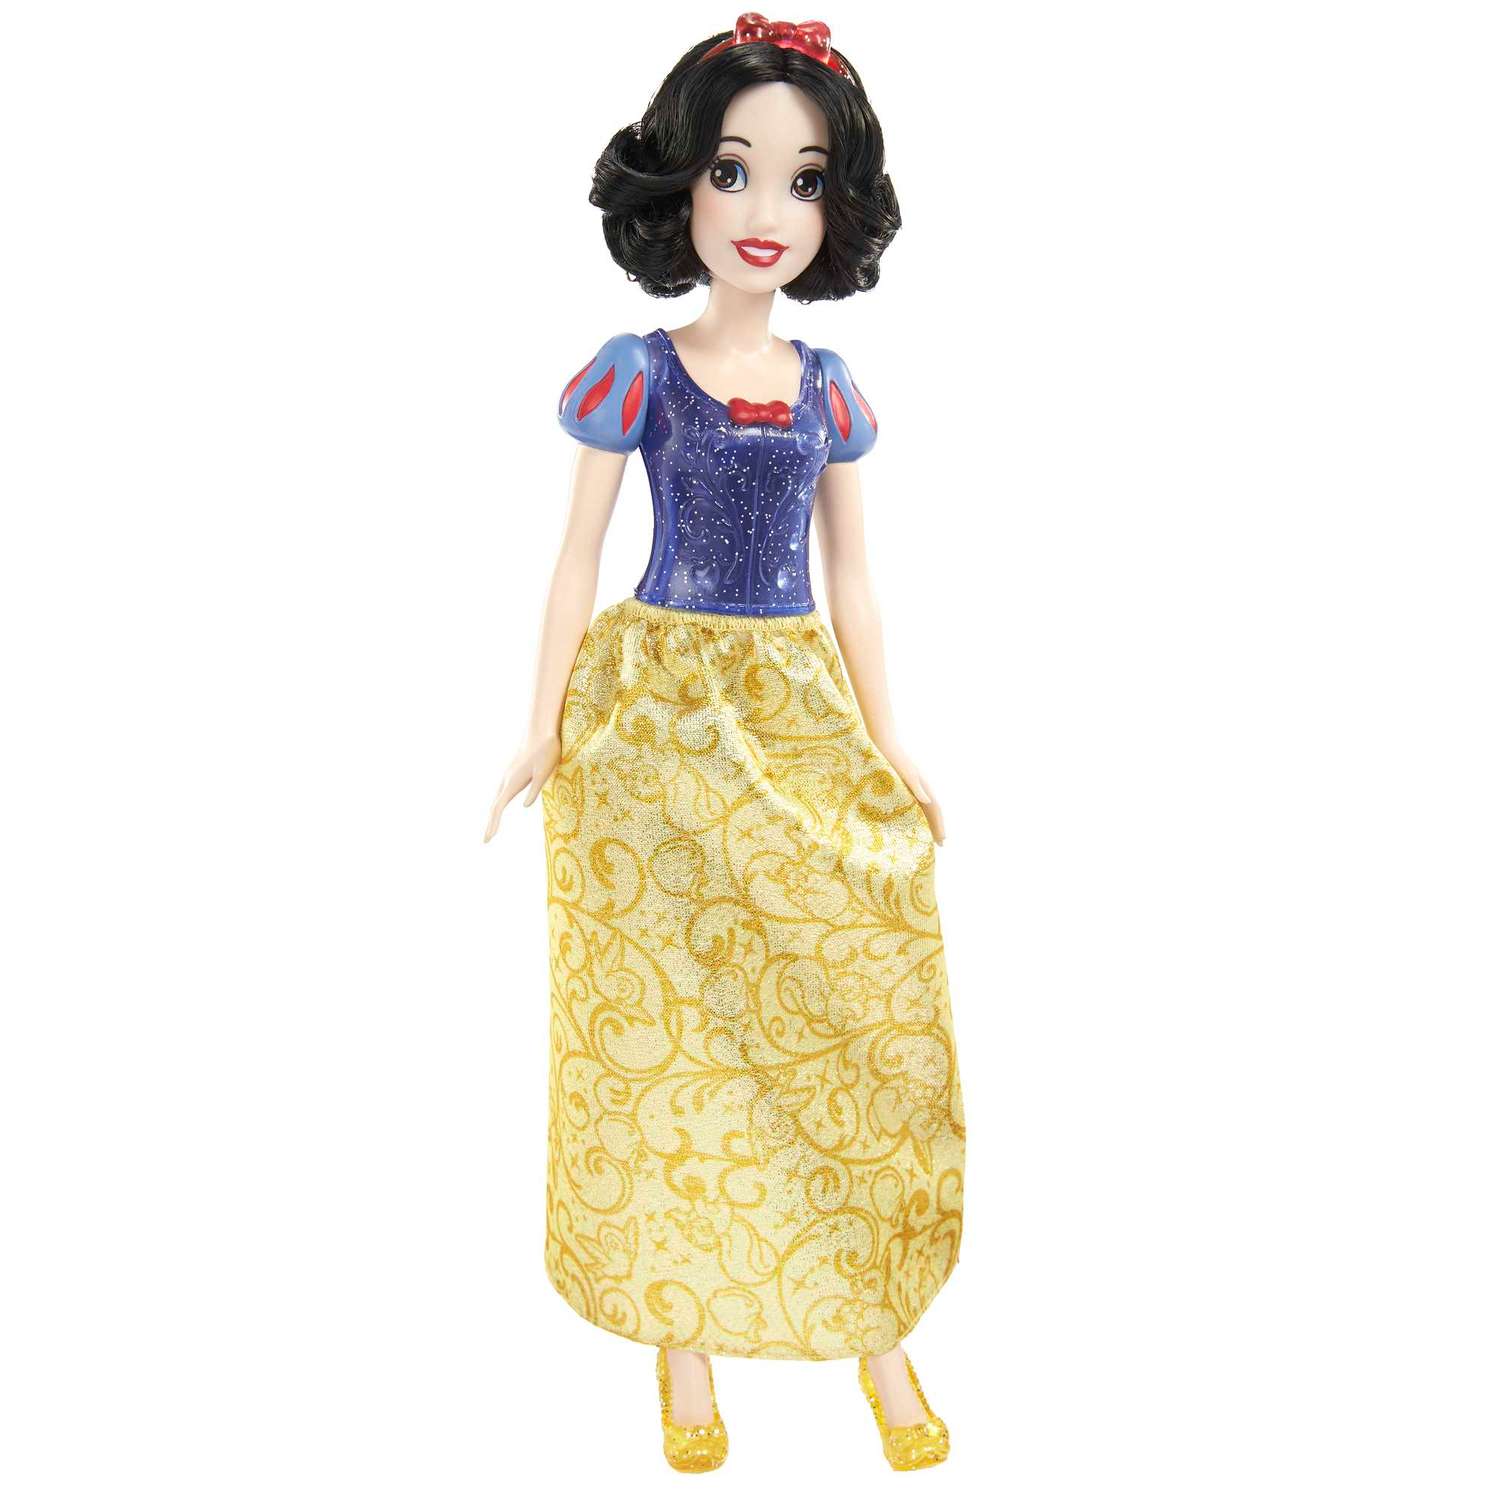 Кукла Disney Princess в ассортименте HLW02 HLW02 - фото 5